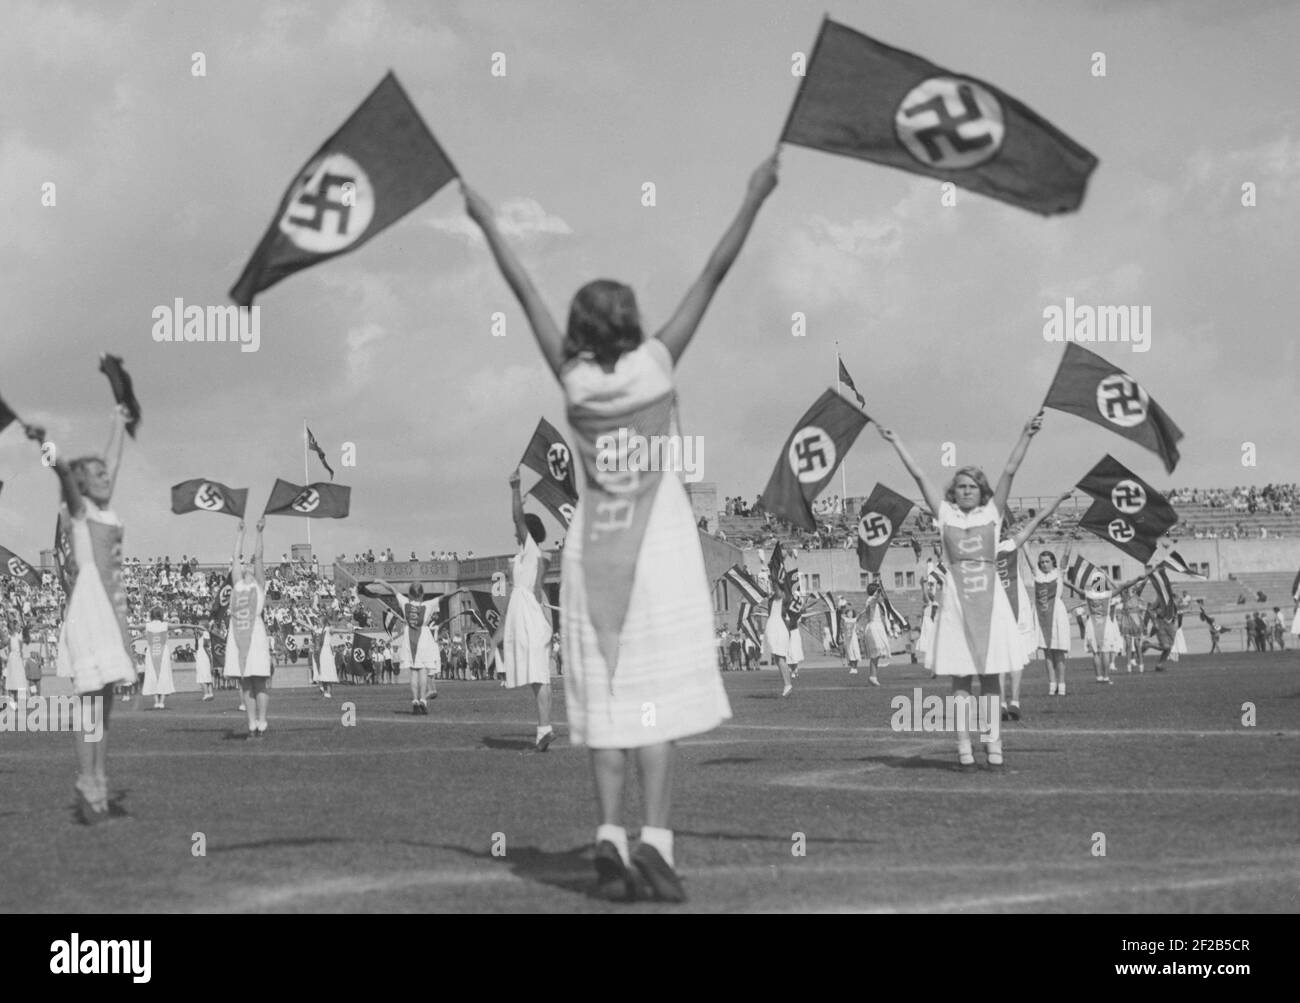 Germania negli anni trenta. Gli studenti tedeschi praticano una routine sulla Berlins sportsarena Deutsches Stadion. L'uso della bandiera nazionalsocialista fa parte della routine. La bandiera divenne germanie naziste solo bandiera officale dal 1935. Foto Stock